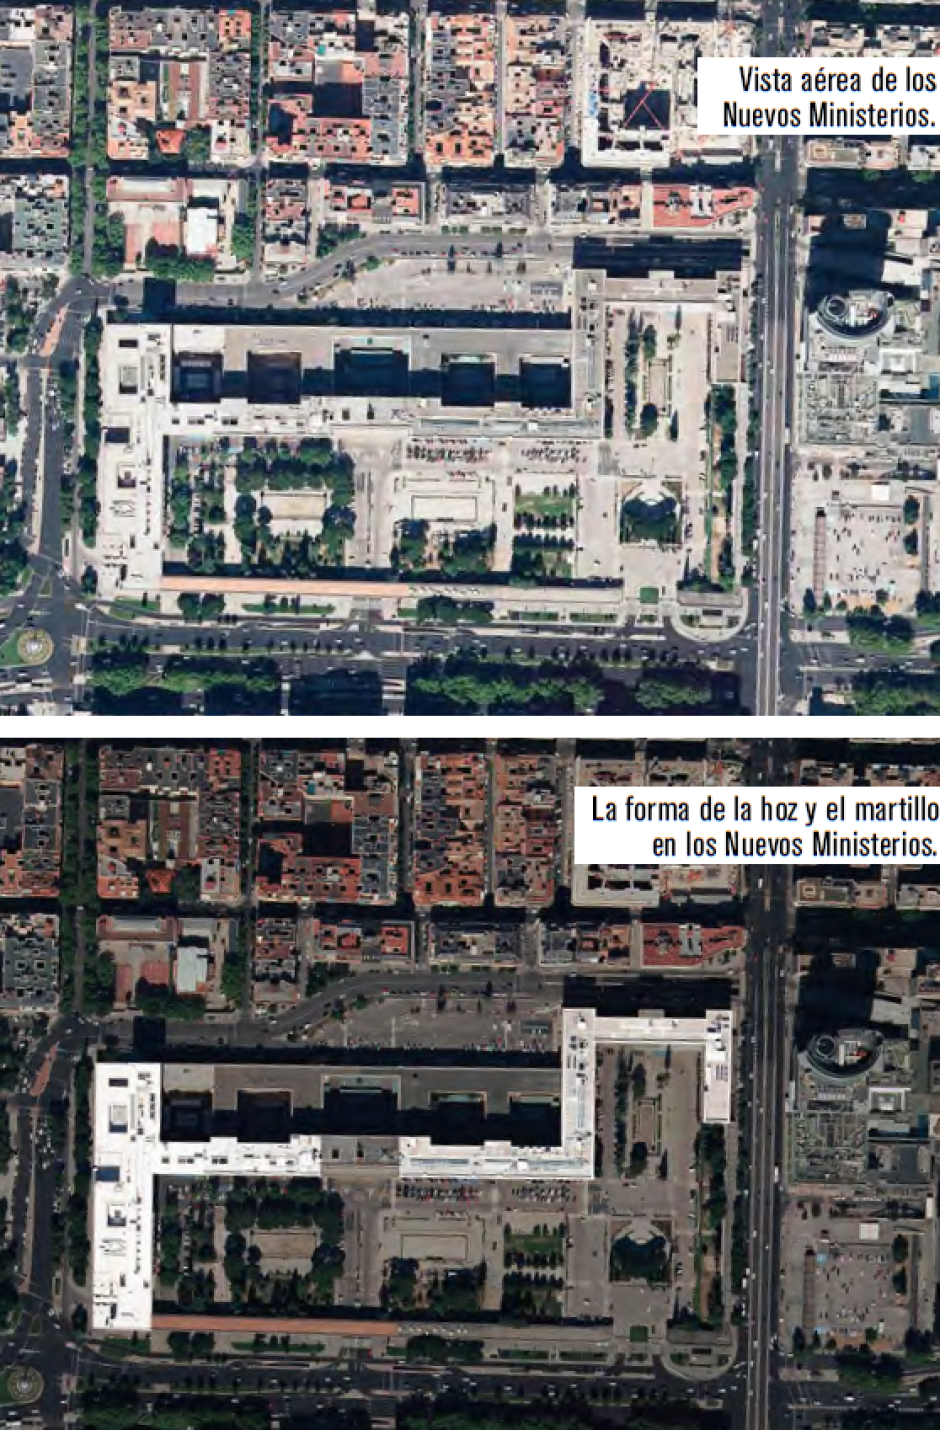 Imágenes aéreas de los Nuevos Ministerios de Madrid